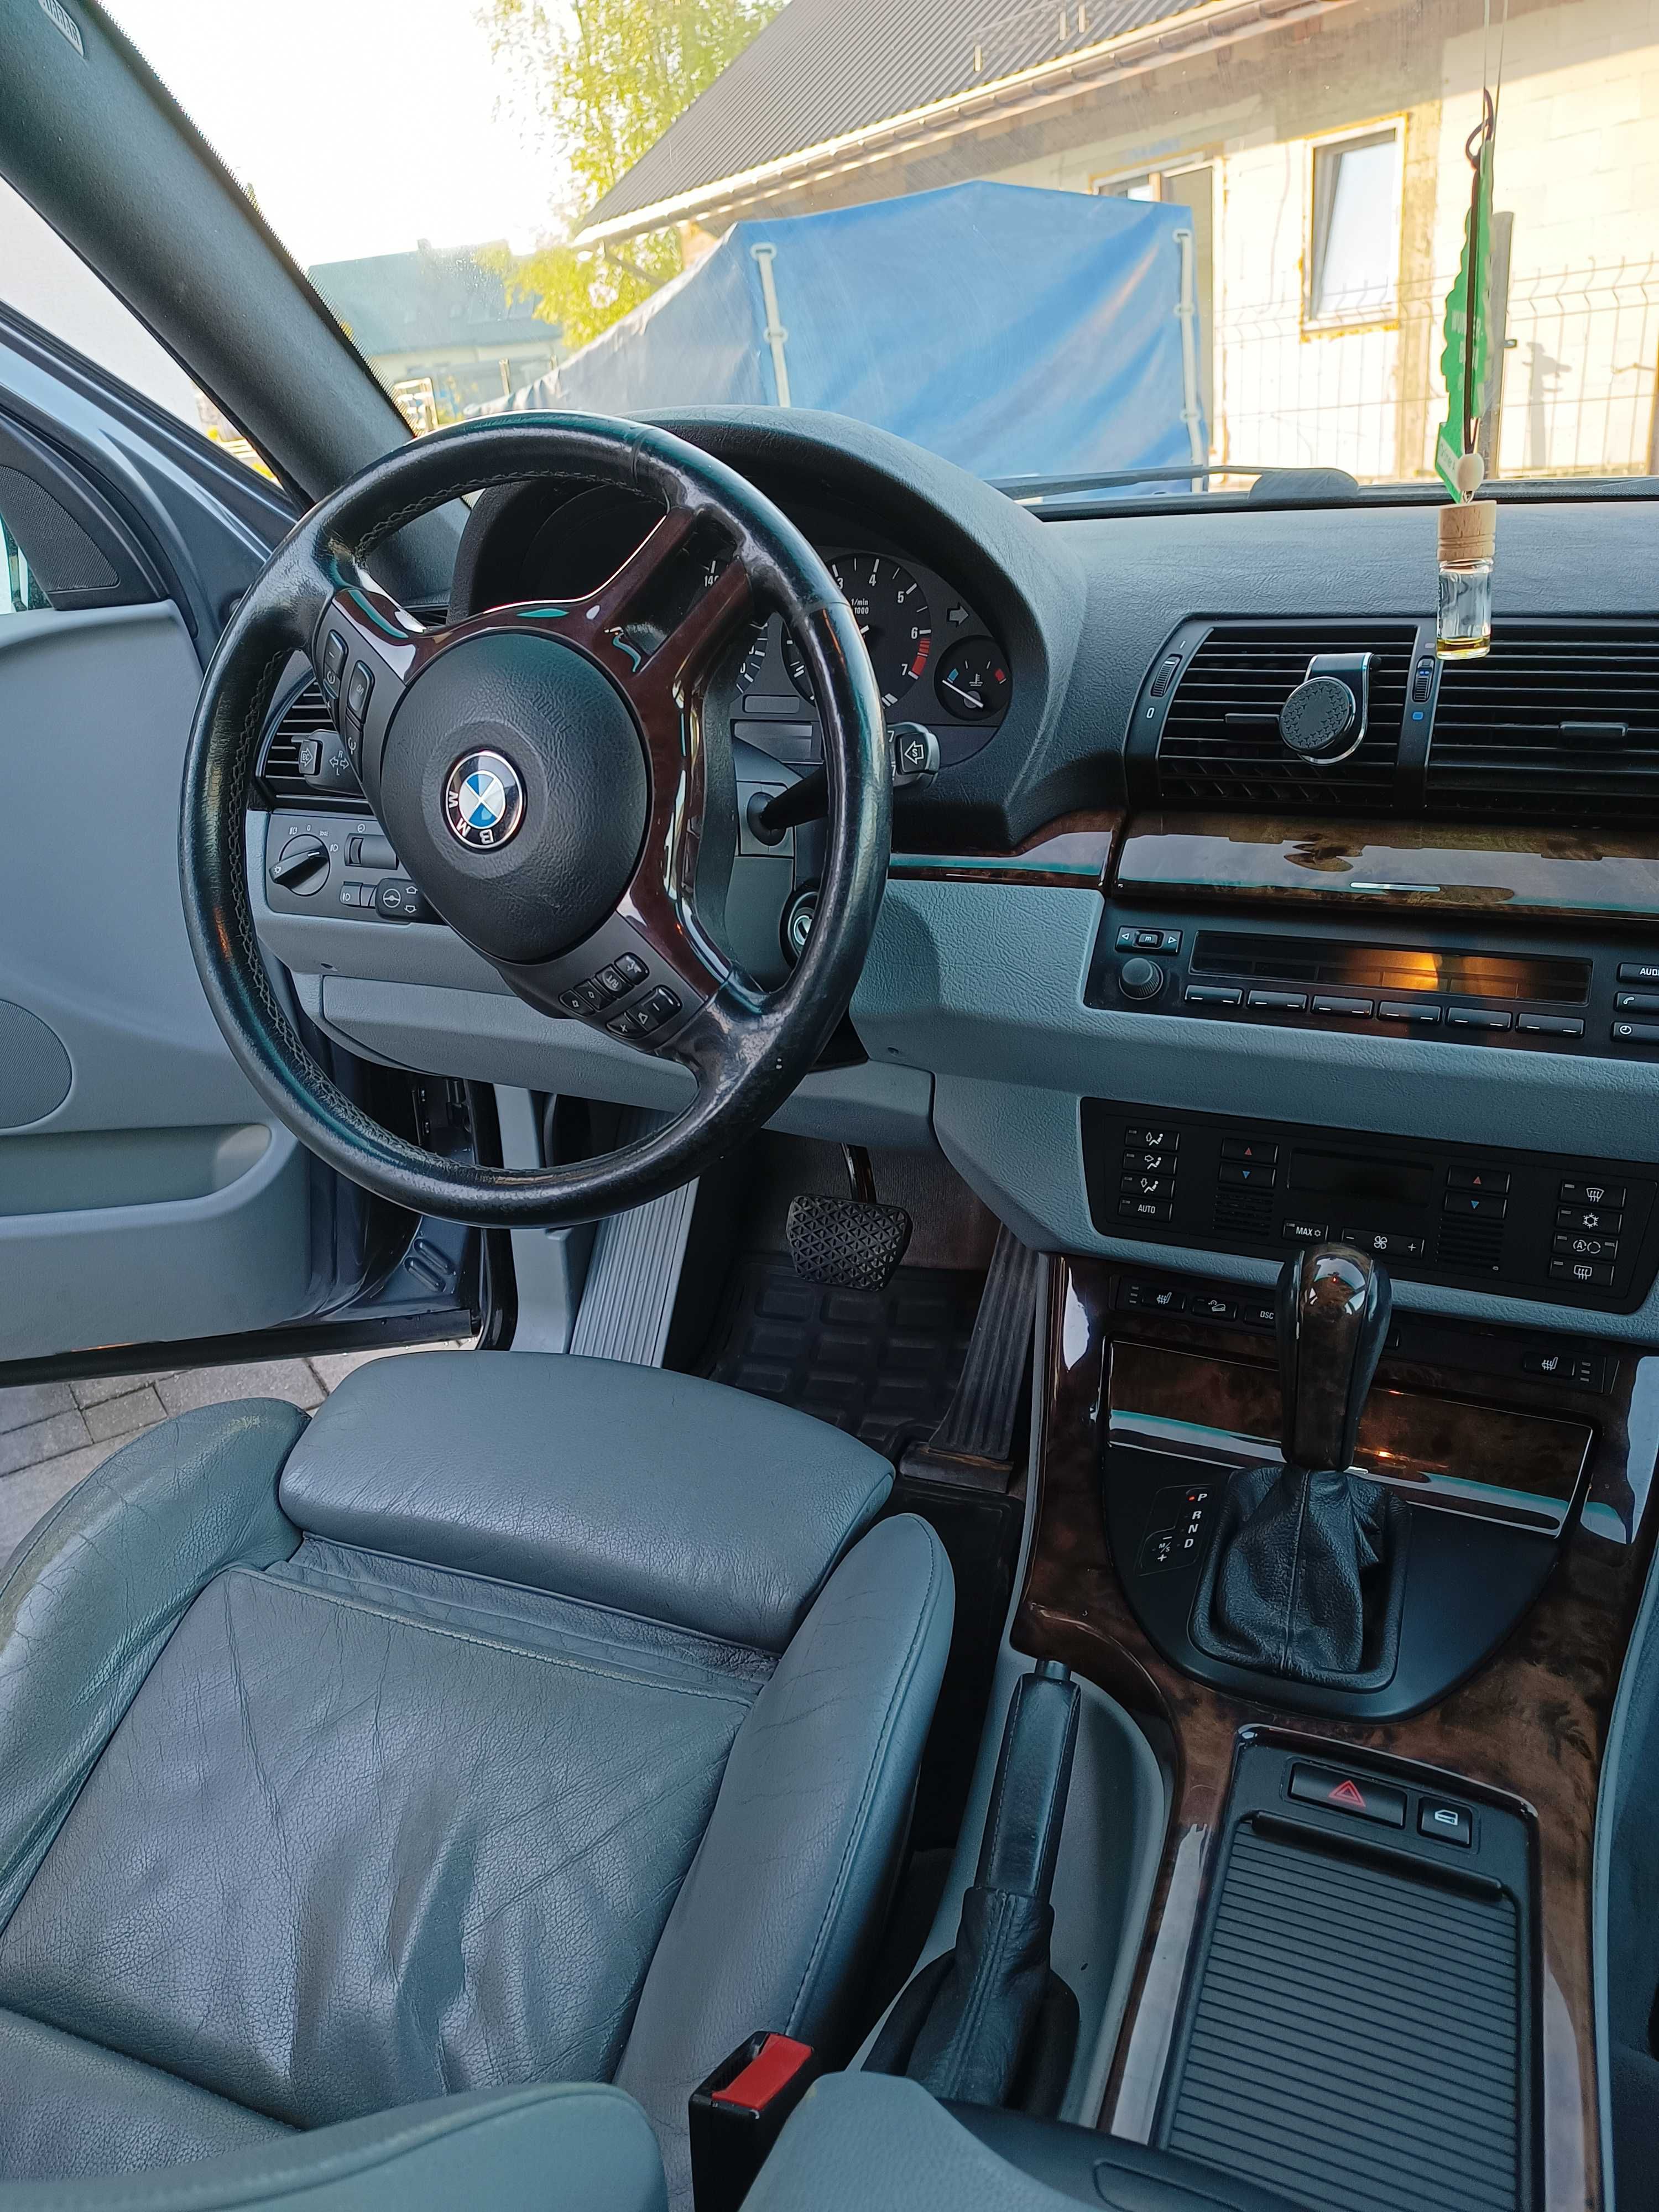 BMW X5 2003r  -sprzedaż/zamiana